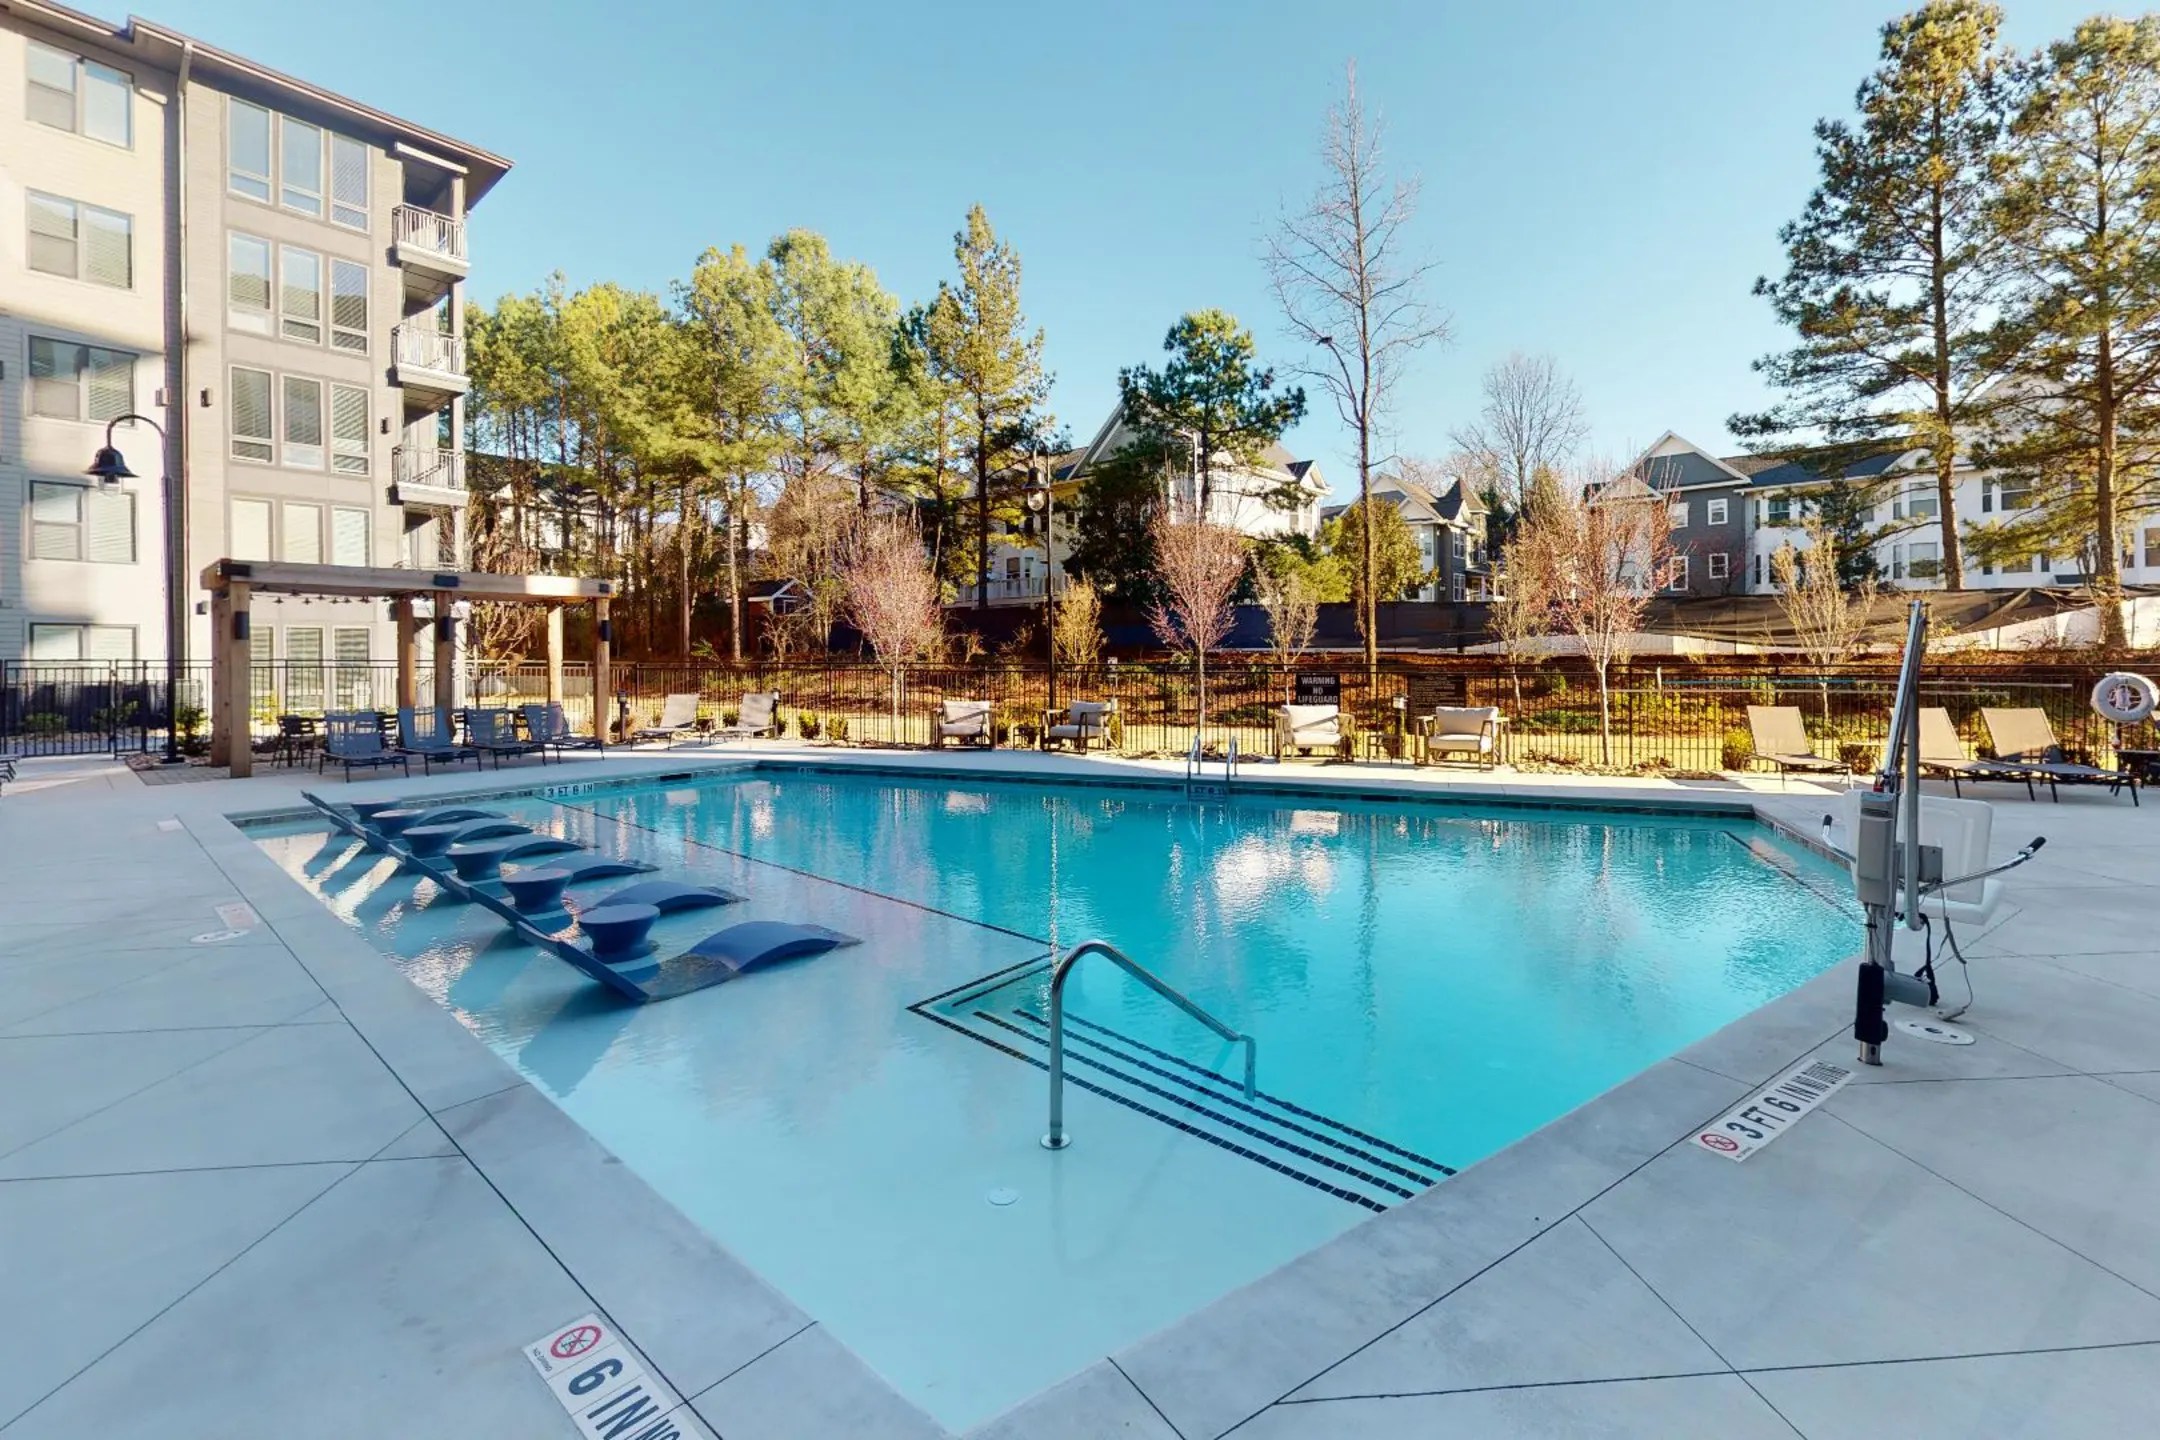 Pool - 915 Glenwood - Atlanta, GA